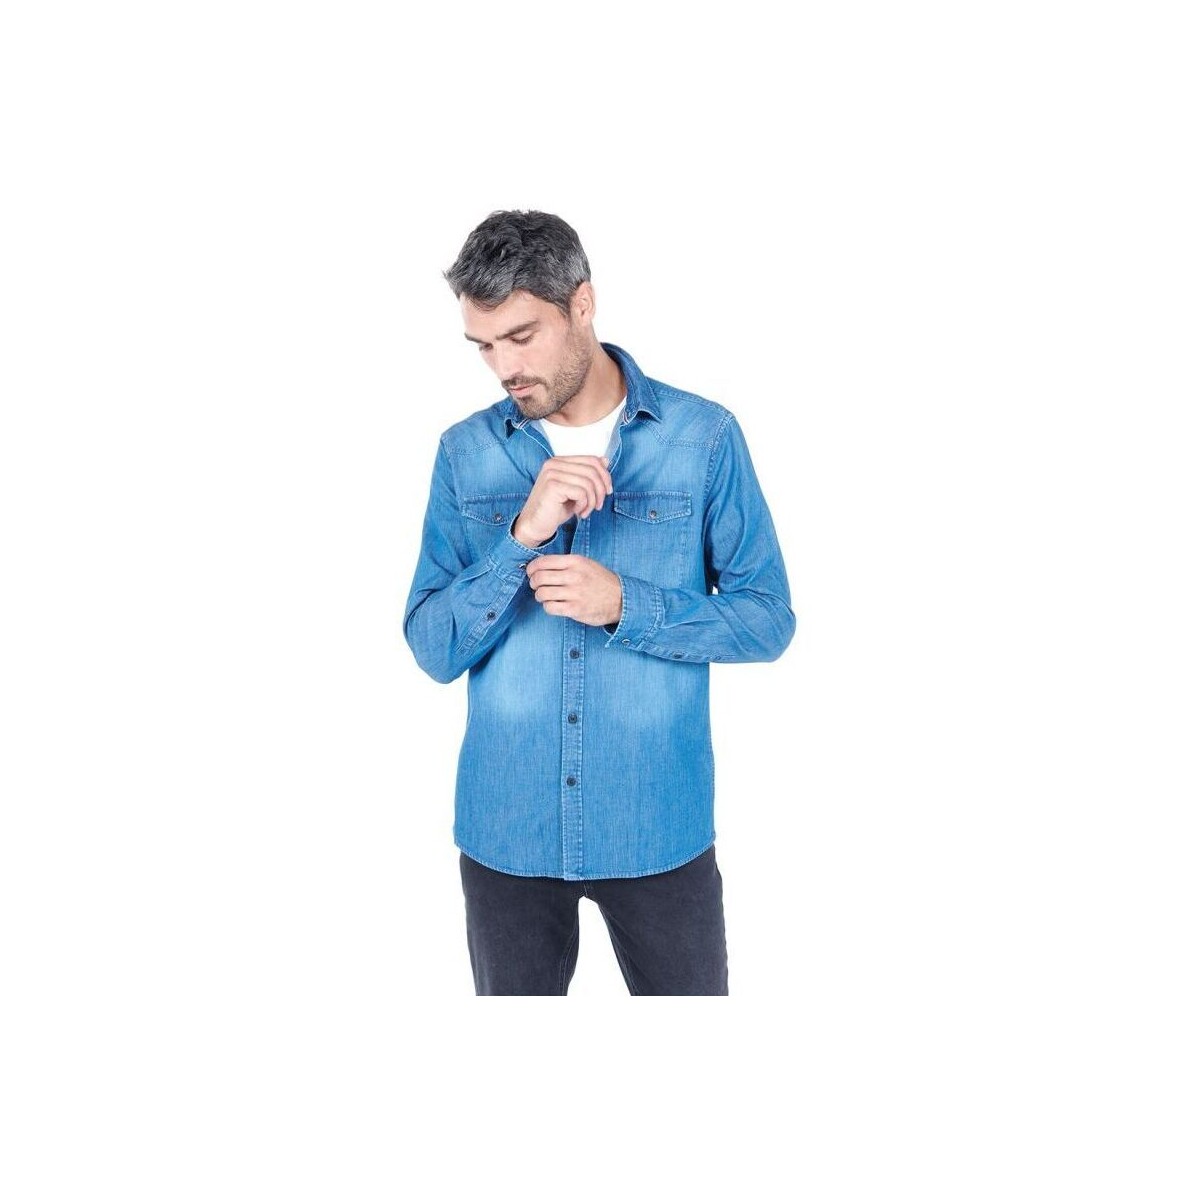 Vêtements Homme Chemises manches longues Jerem CHEMISE EN DENIM Bleu